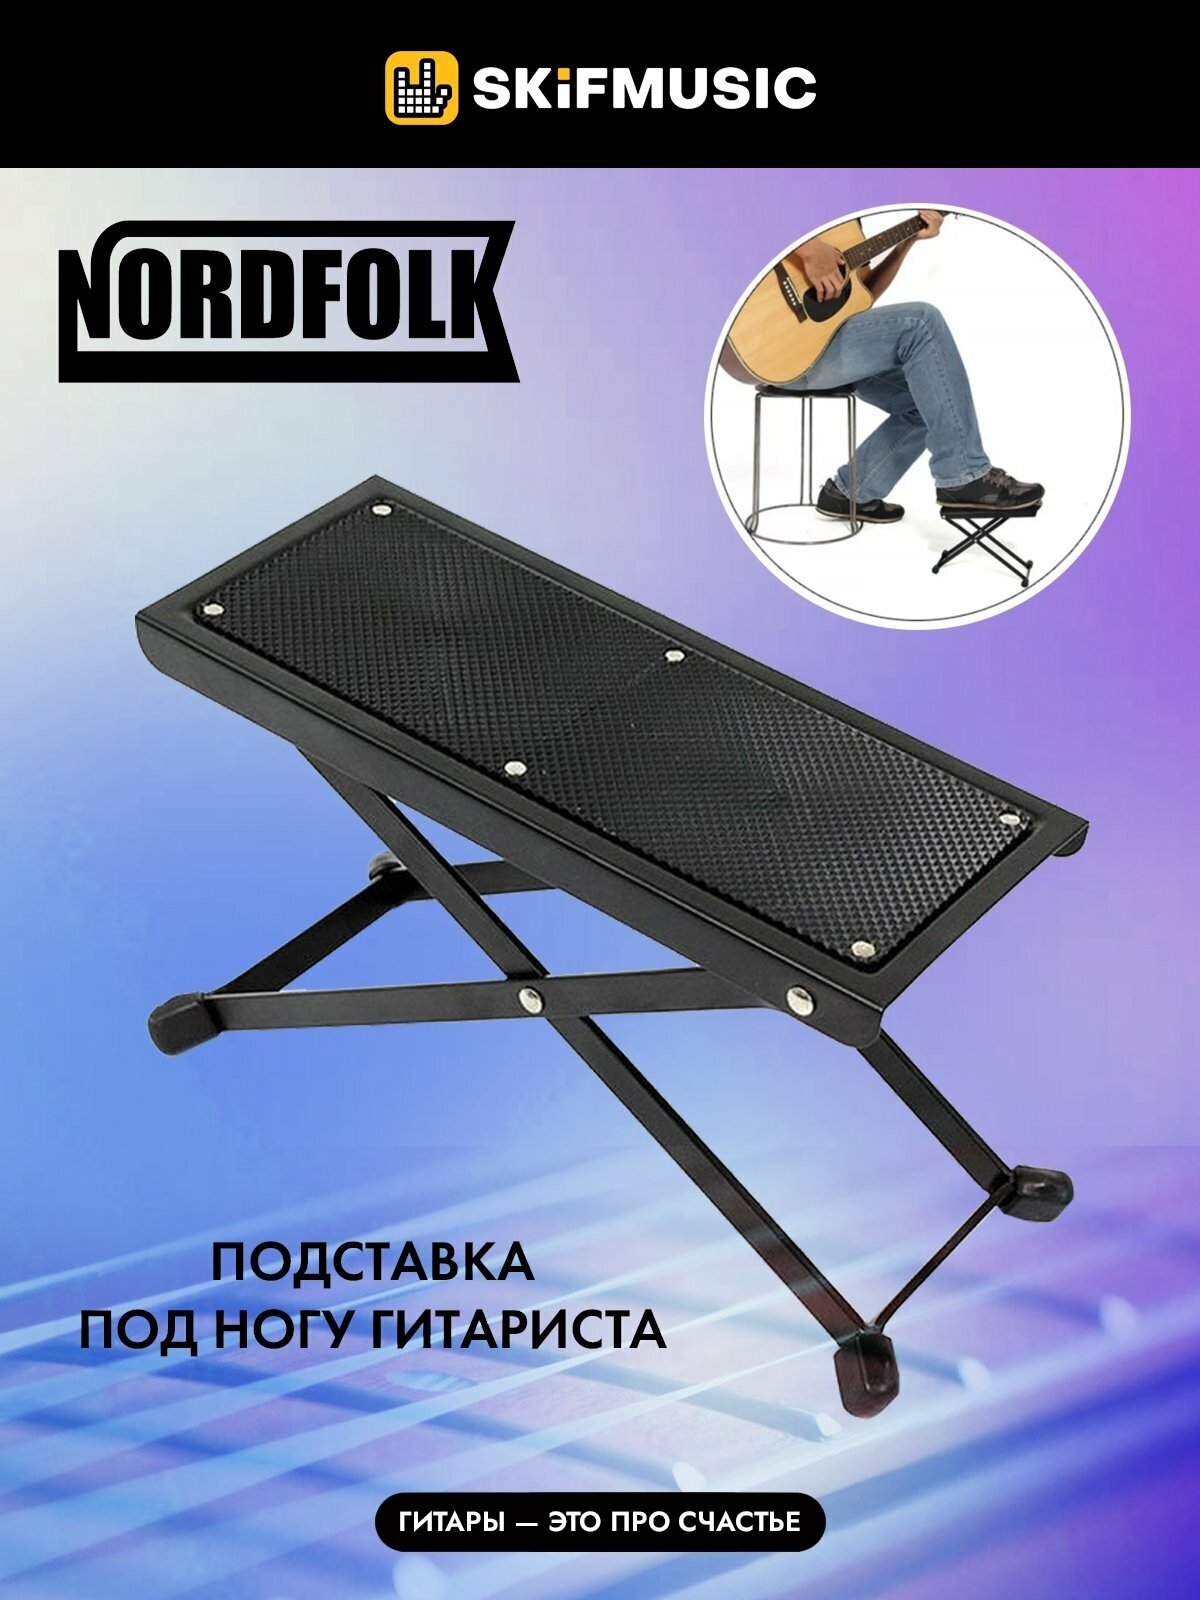 Подставка под ногу гитариста NordFolk NGS31, металлическая, регулируемый угол наклон